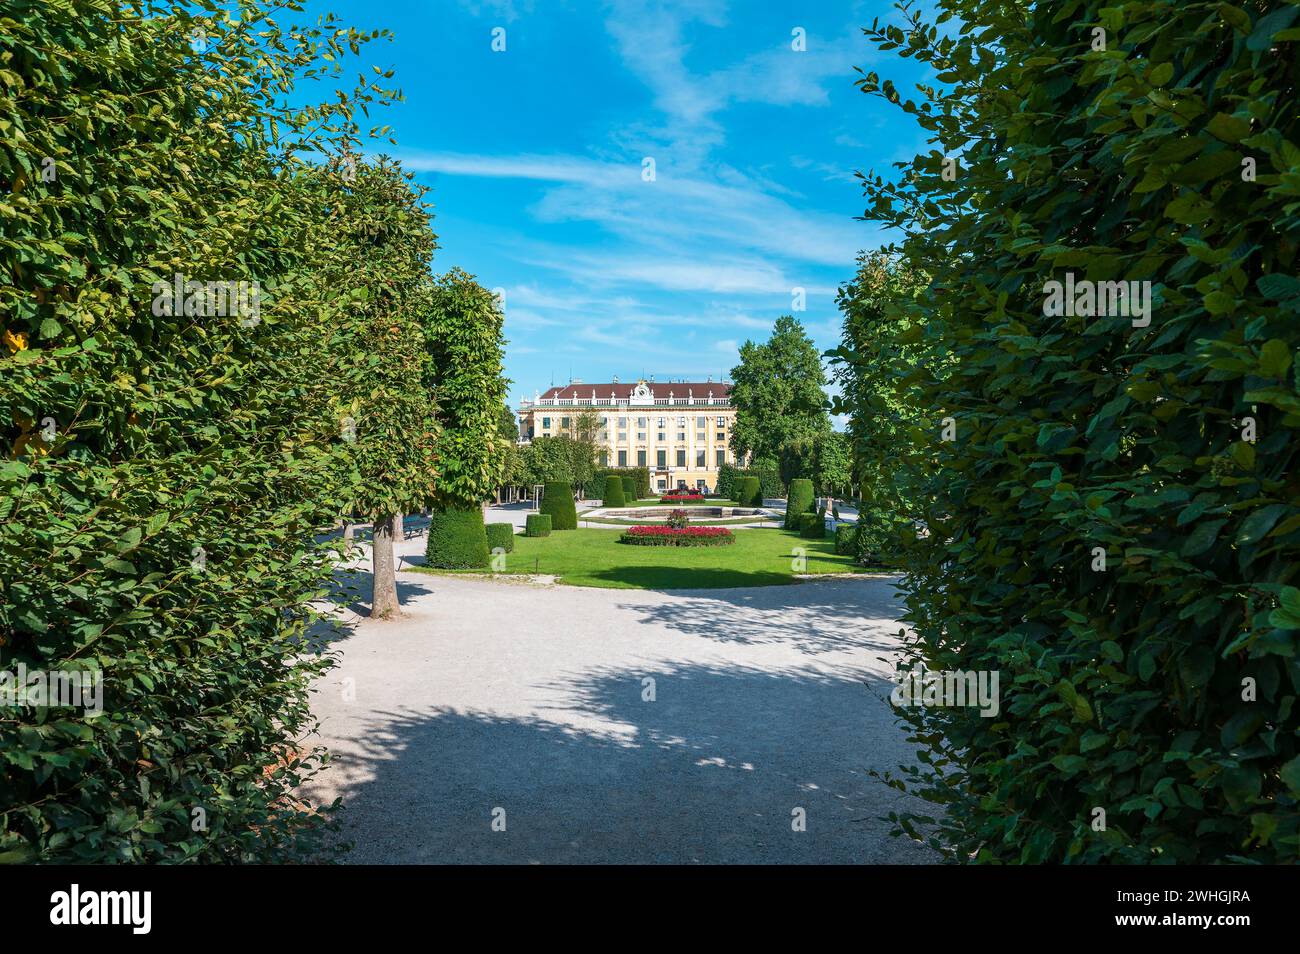 Vienne, Autriche - 12 août 2022 : Palais de Schönbrunn, la magnifique résidence d'été des souverains des Habsbourg à Vienne. Admirez son architecture opulente Banque D'Images